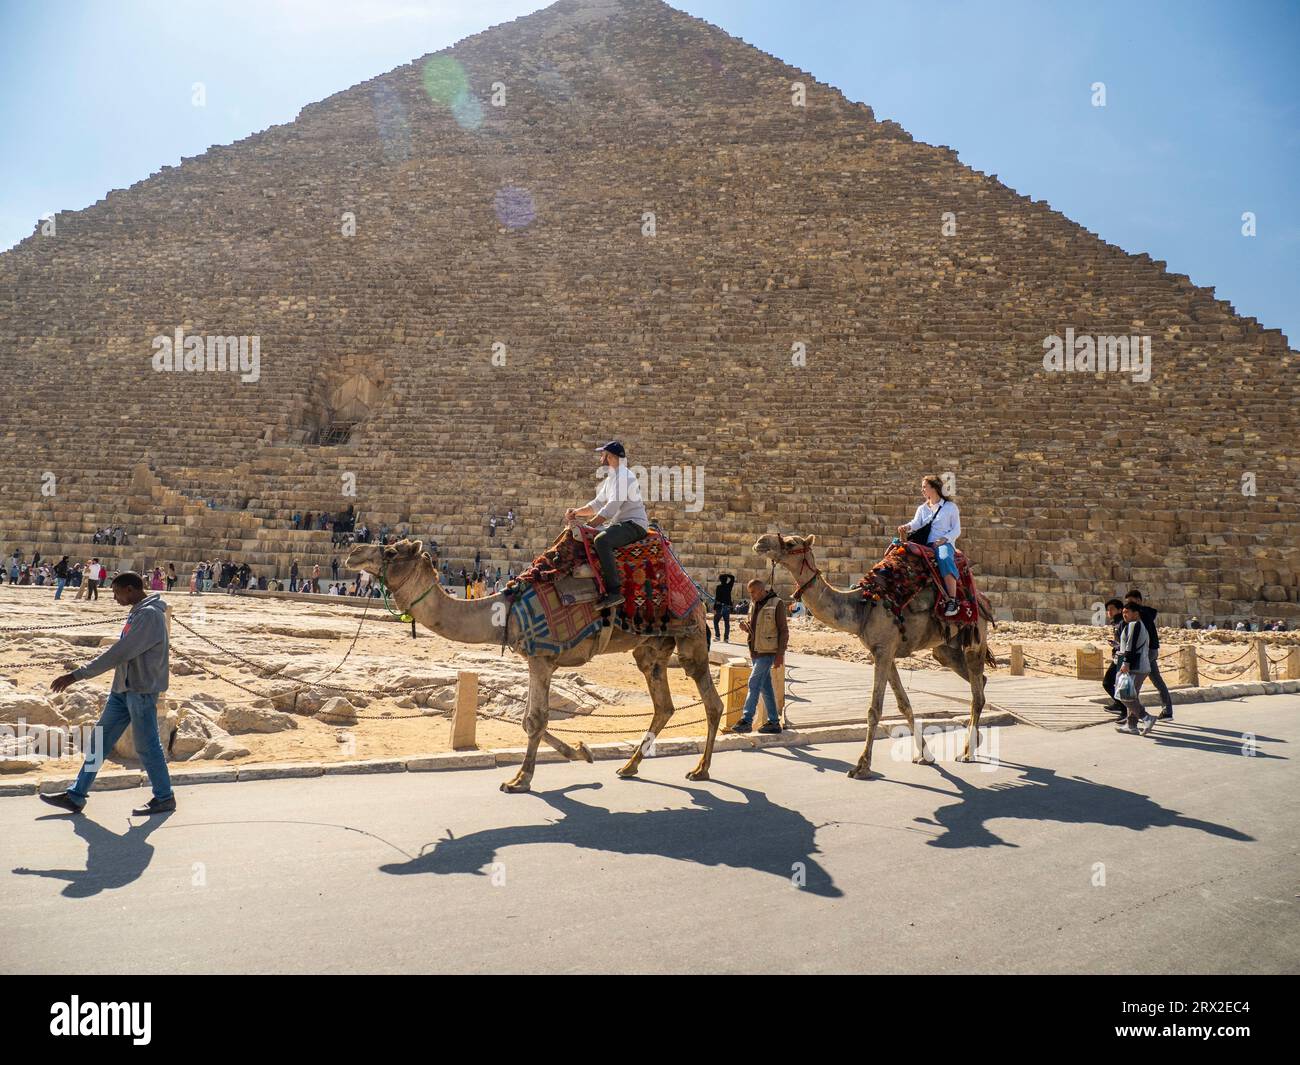 Turista in un giro in cammello di fronte alla grande Piramide di Giza, la più antica delle sette meraviglie del mondo, vicino al Cairo, in Egitto Foto Stock